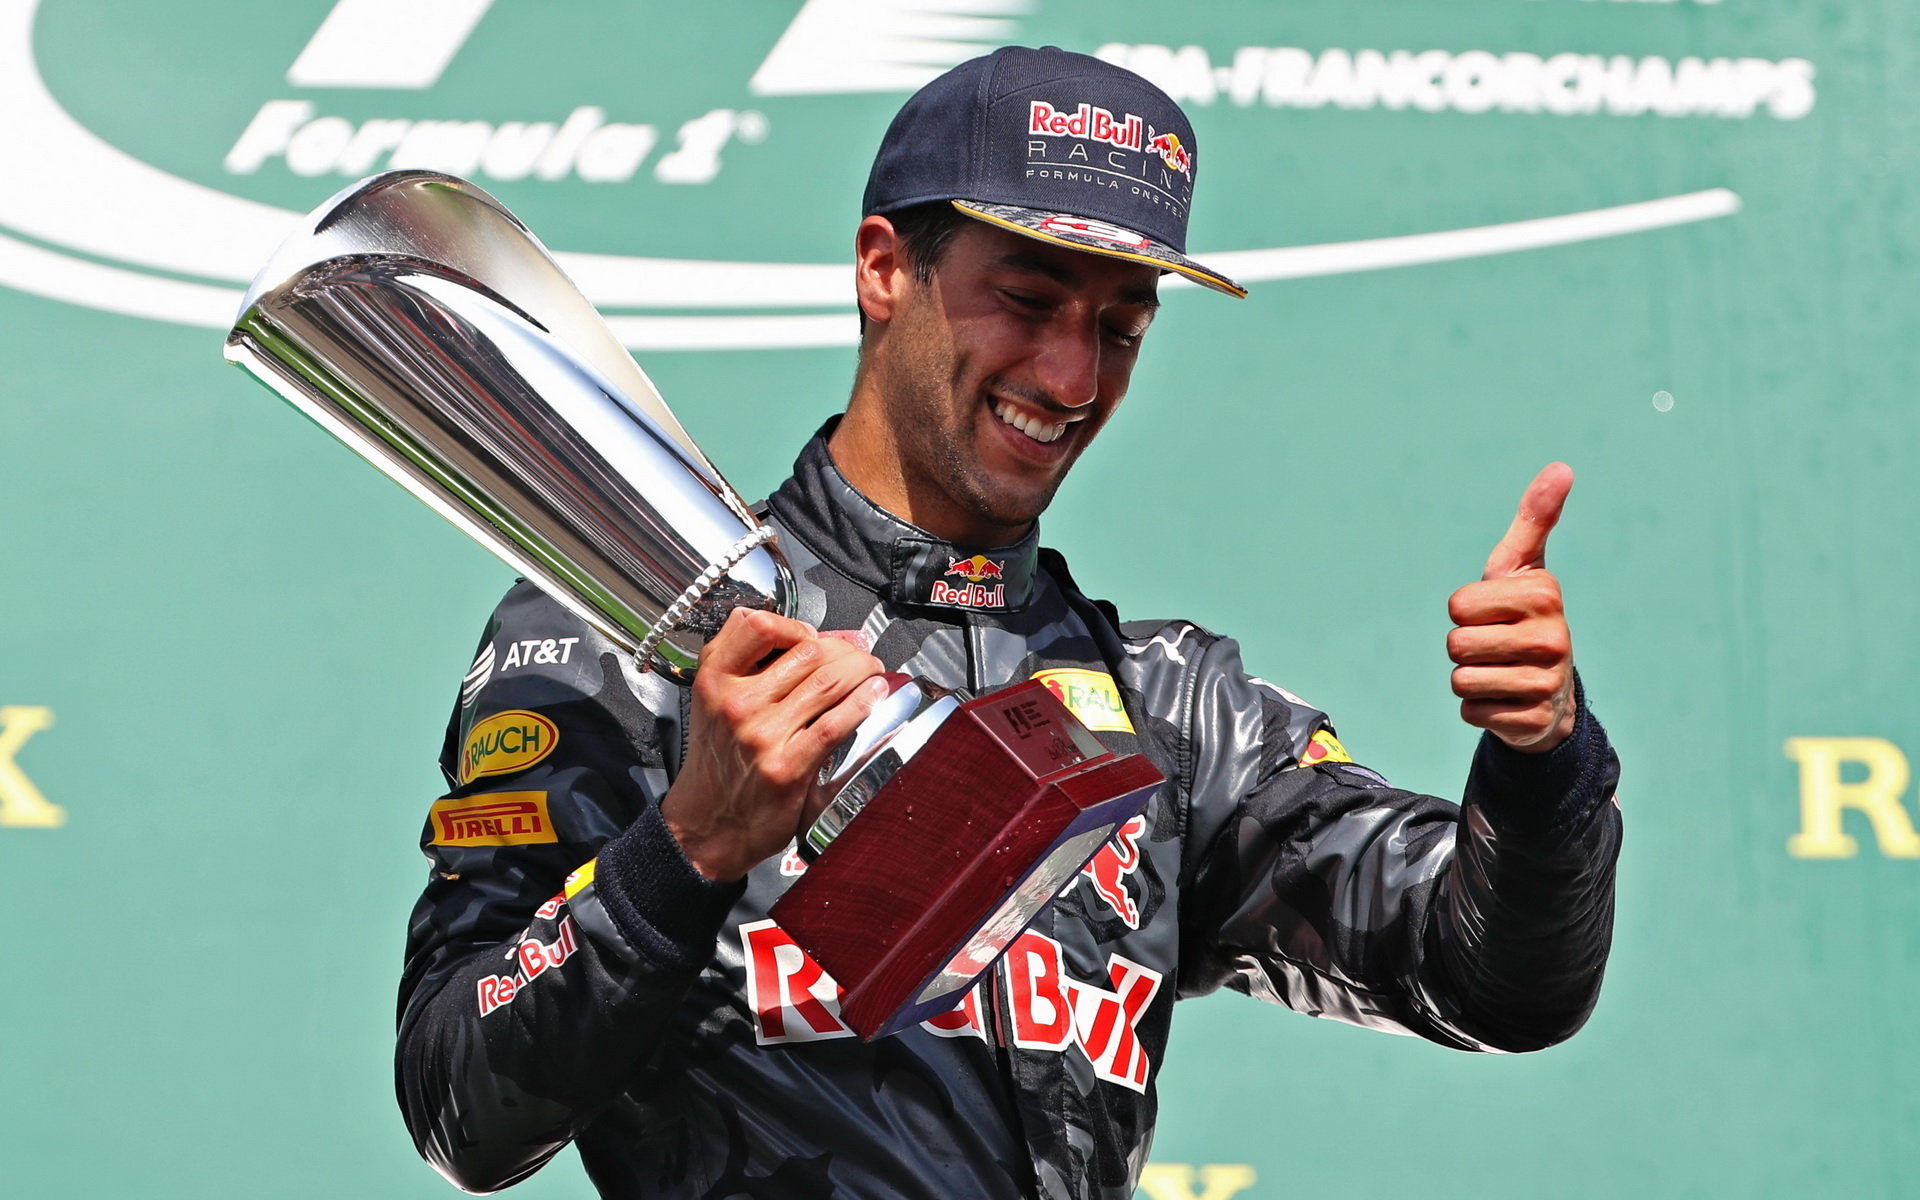 Daniel Ricciardo se svou trofejí na pódiu po závodě v Belgii